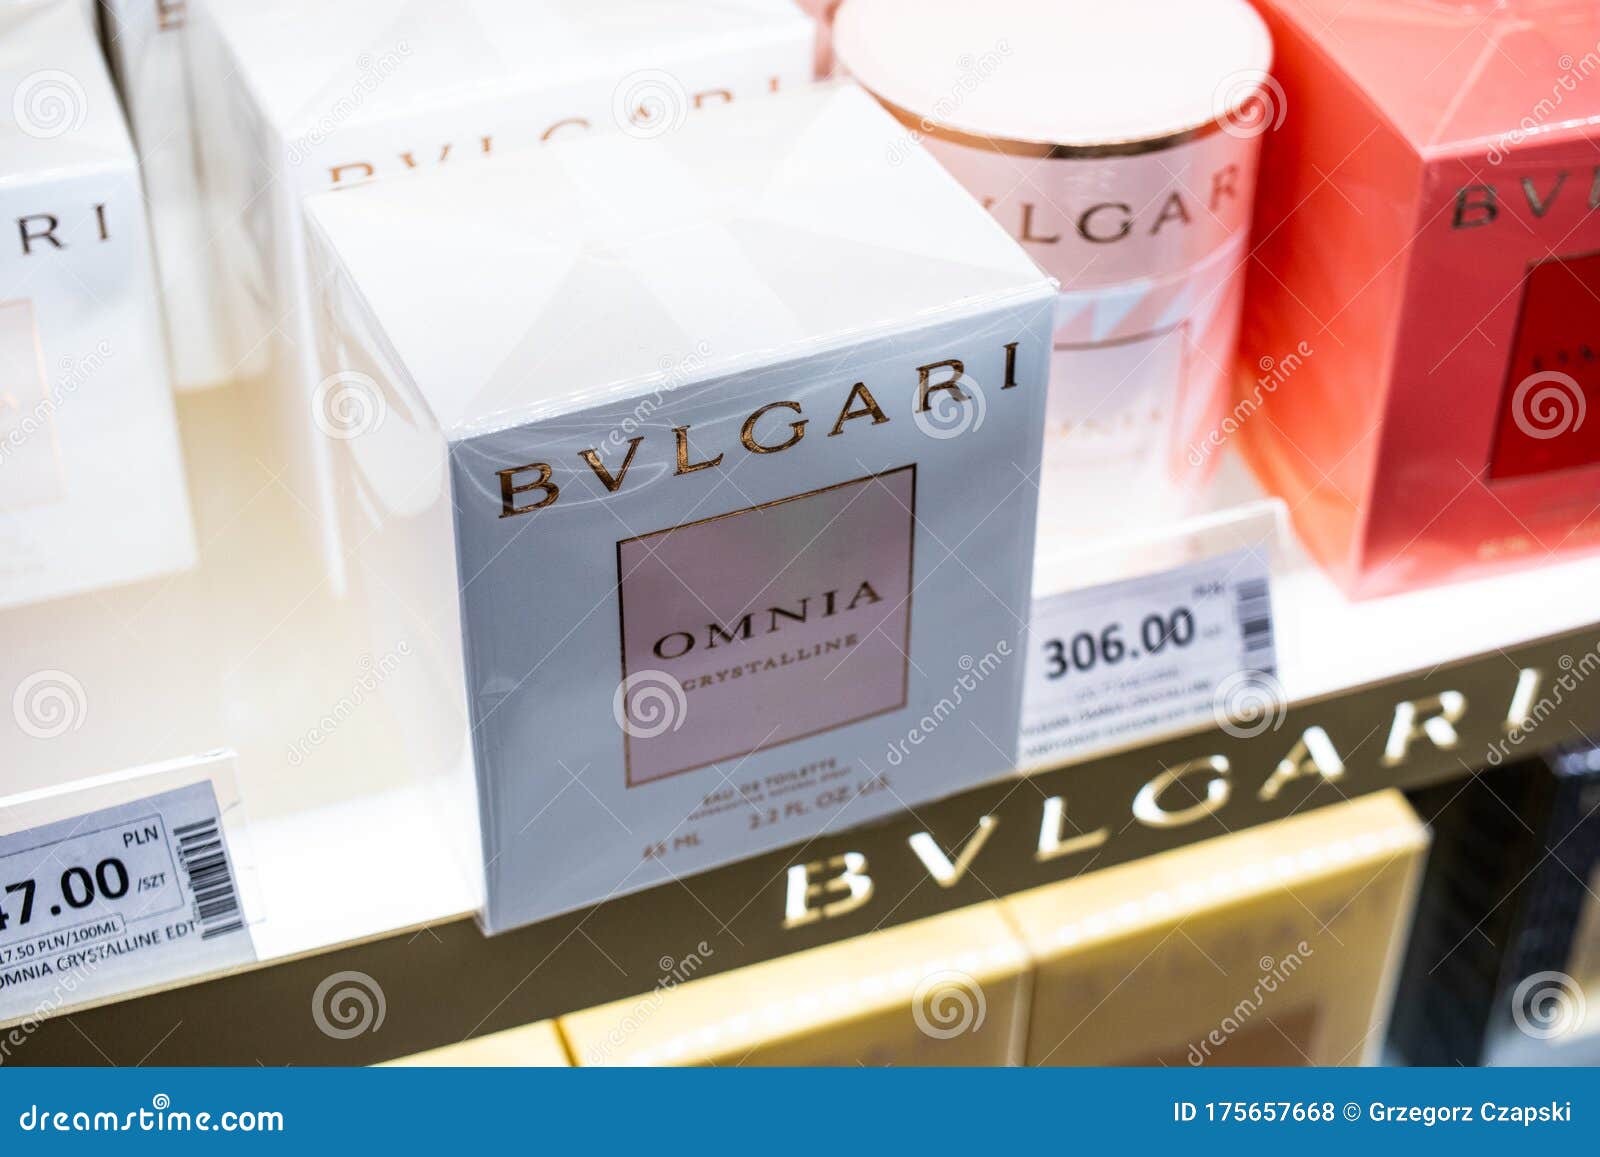 bvlgari perfume license